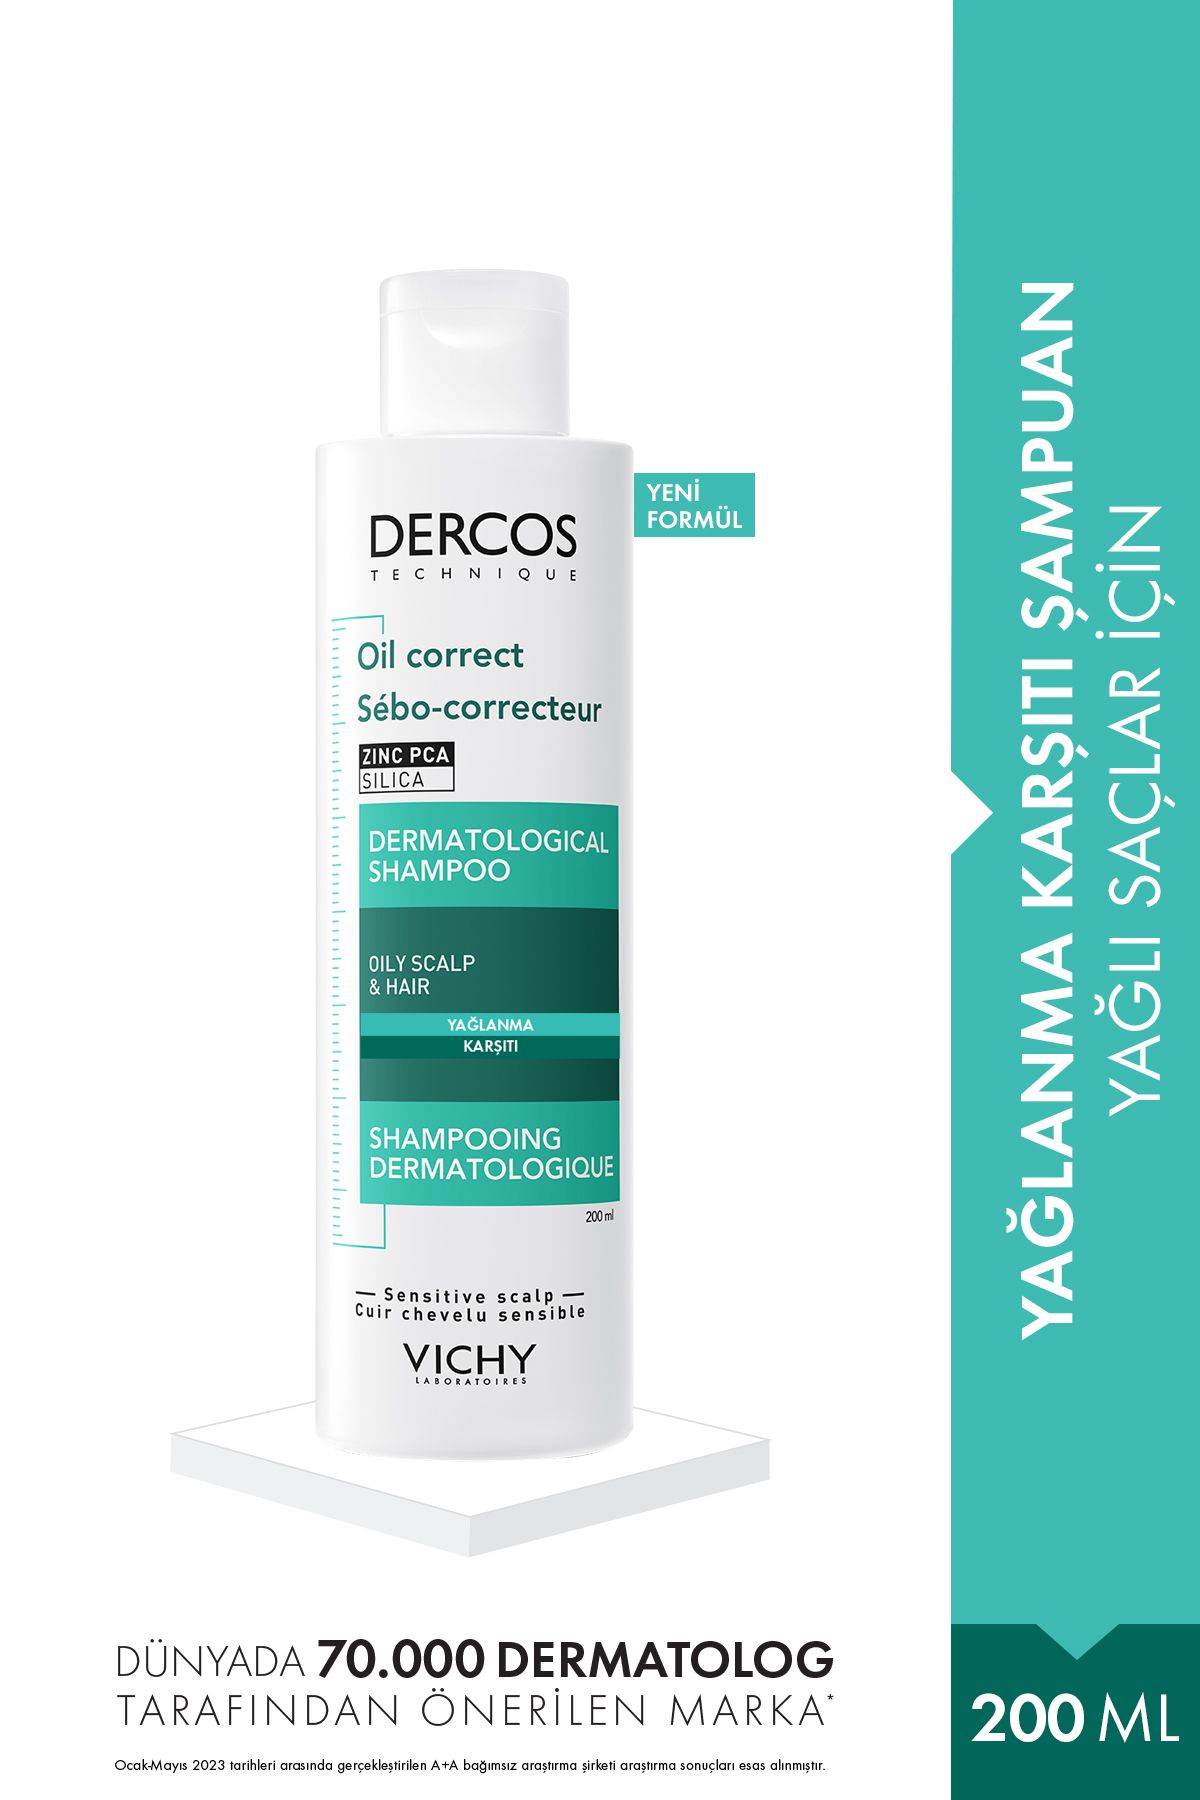 Vichy Dercos Oil Correct Aşırı Yağlanma Karşıtı Şampuan 200 ml